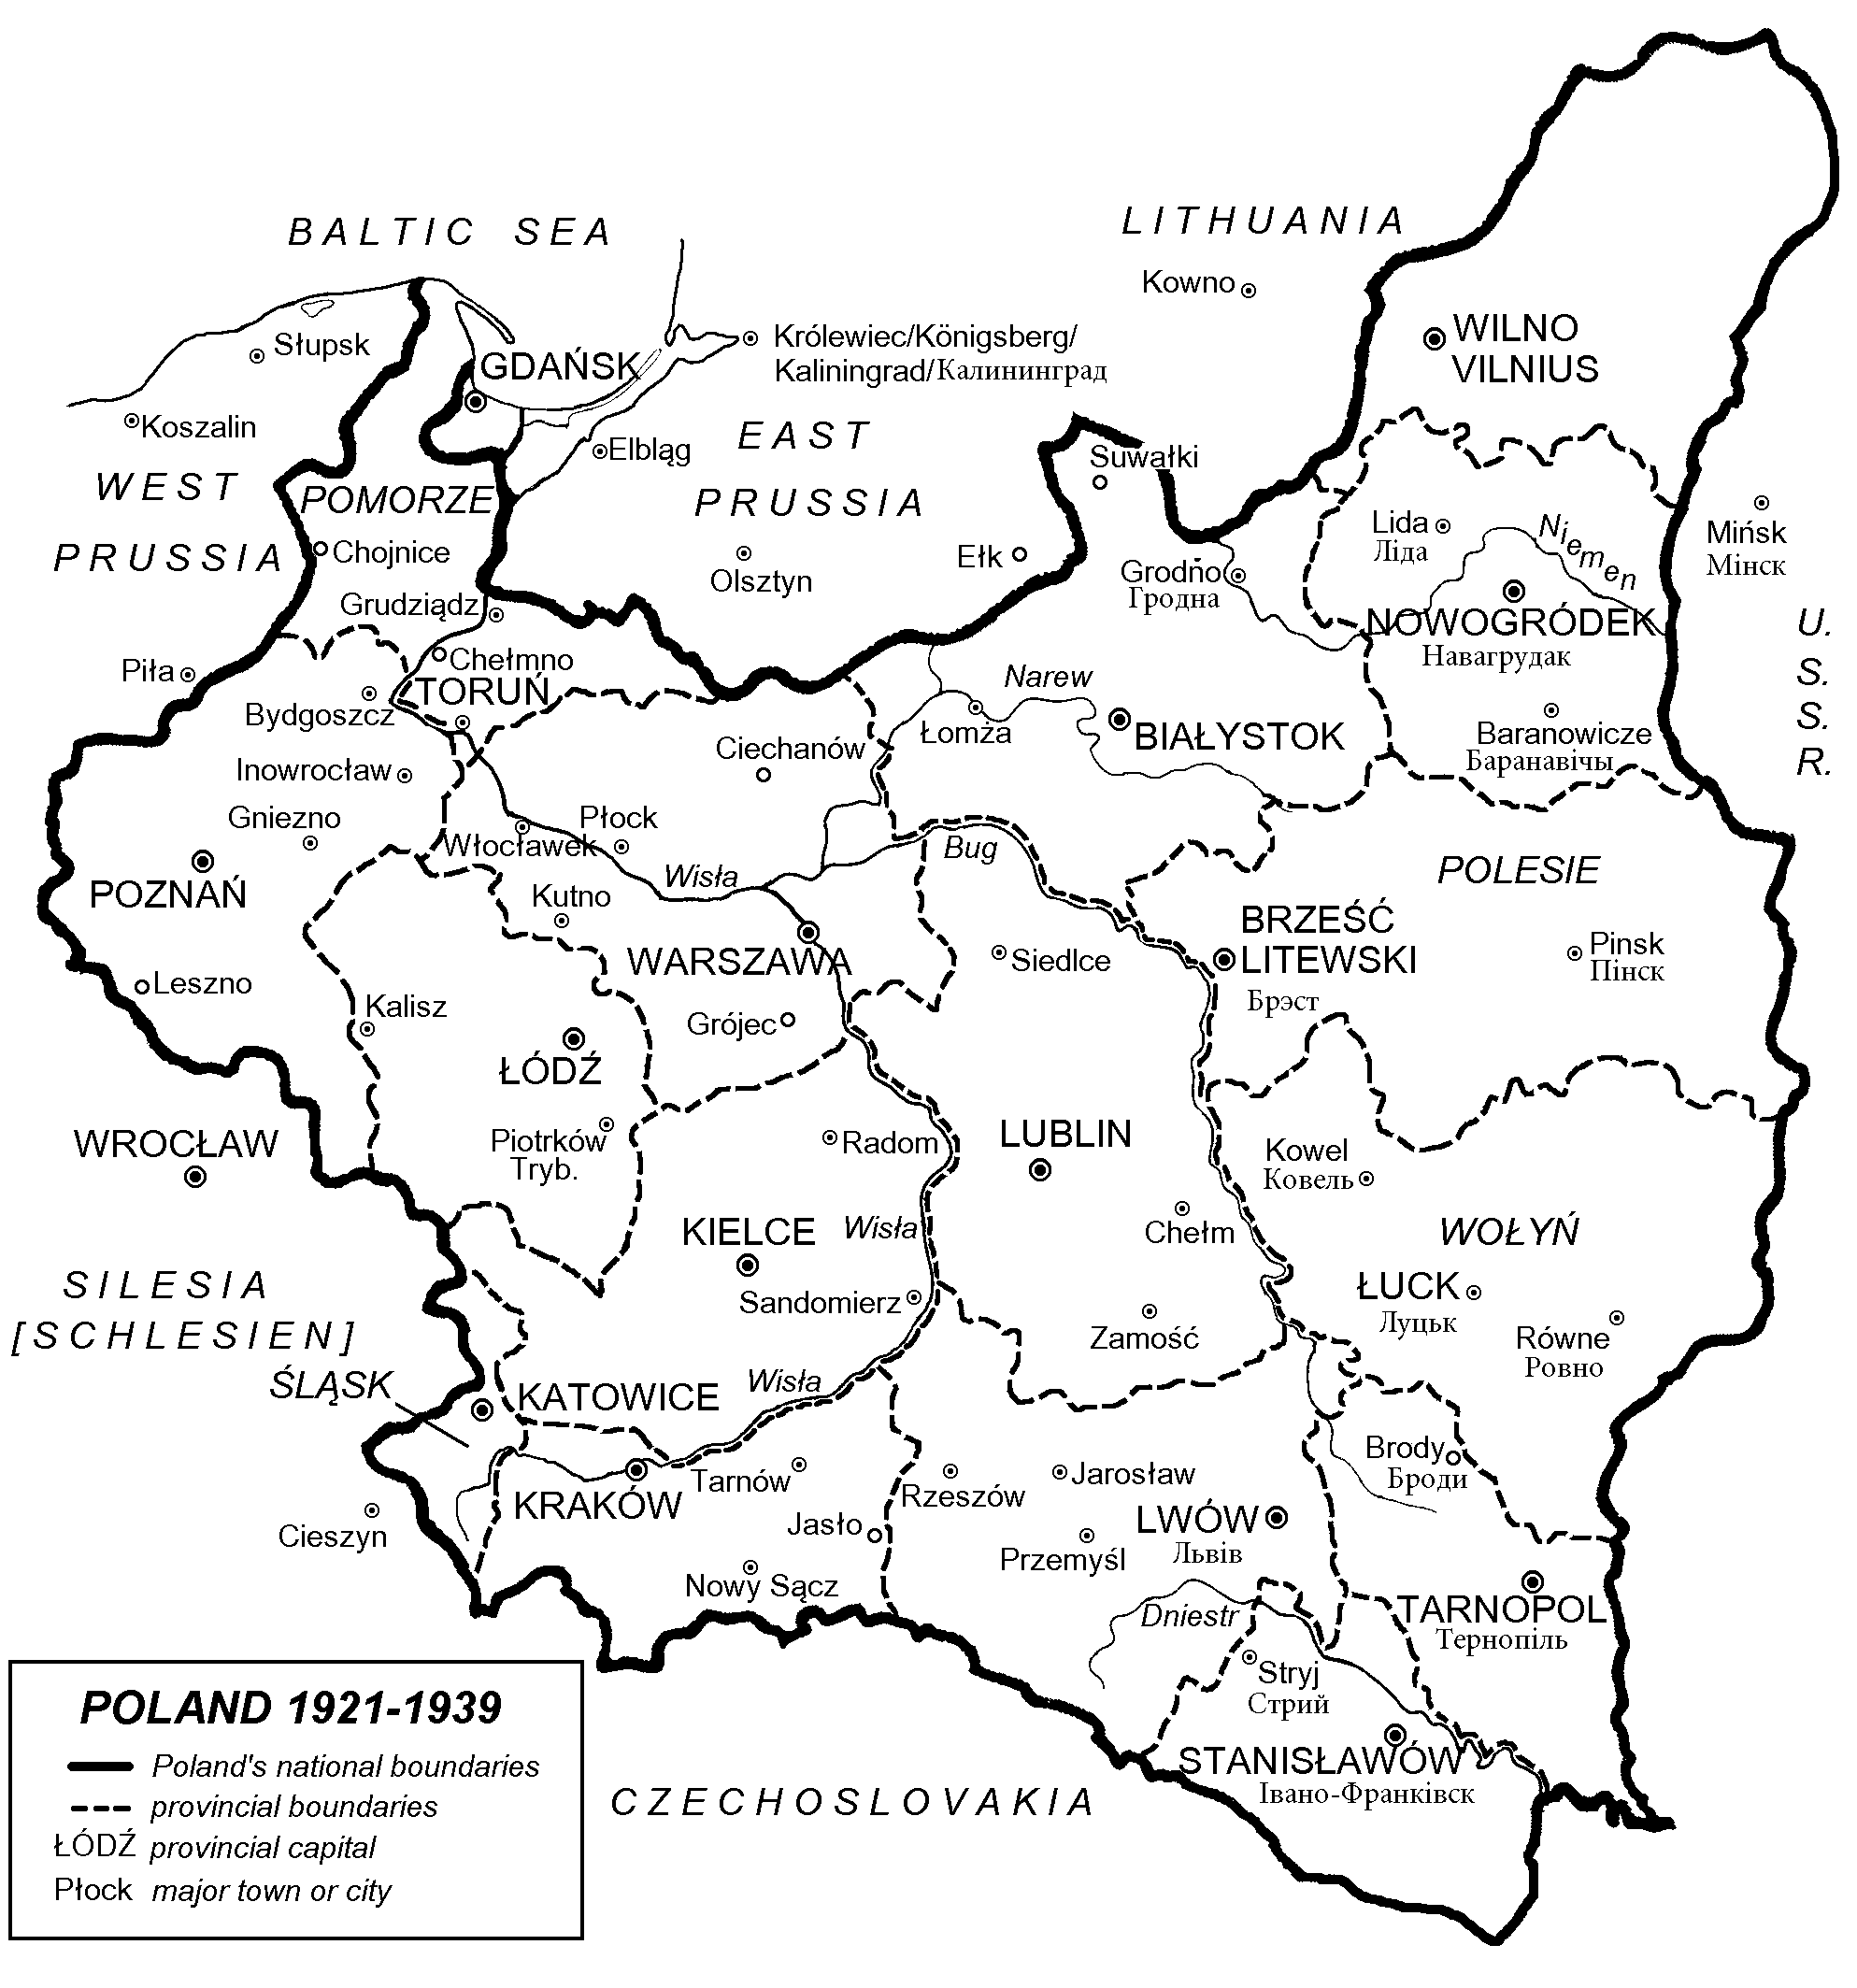 Poland, 1921-1929